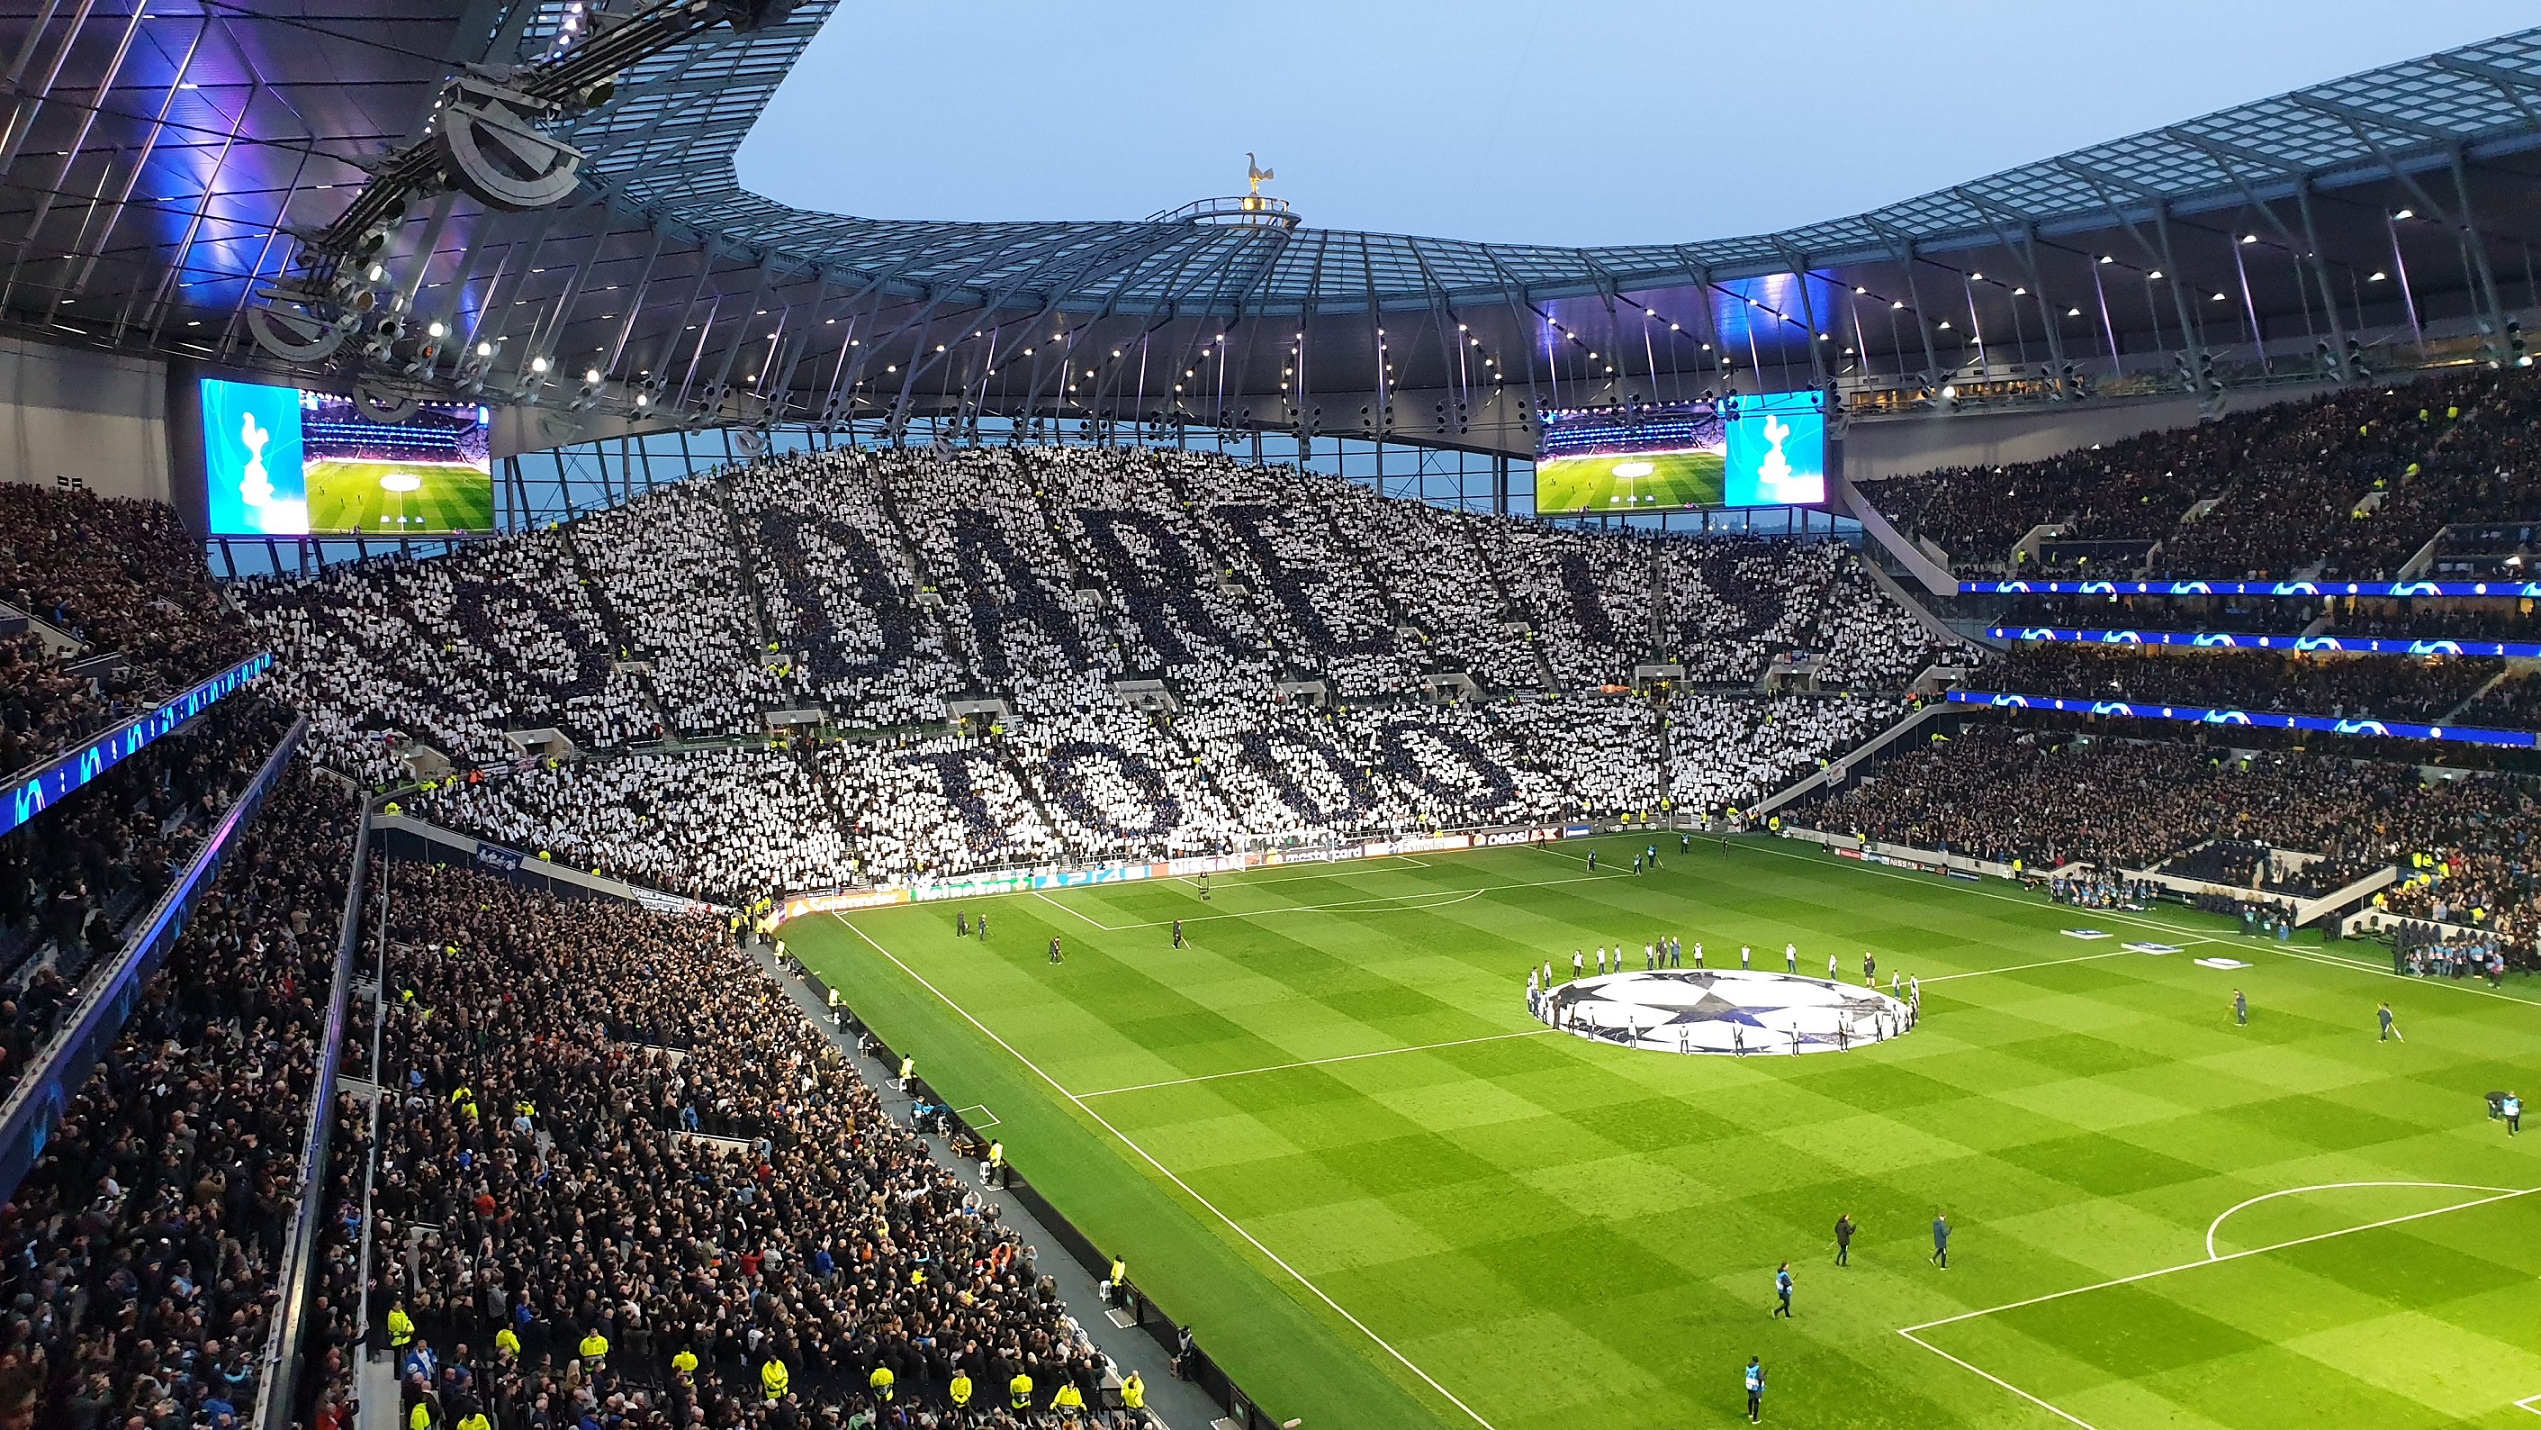 The Tottenham Hotspur Stadium has not seen fans since March